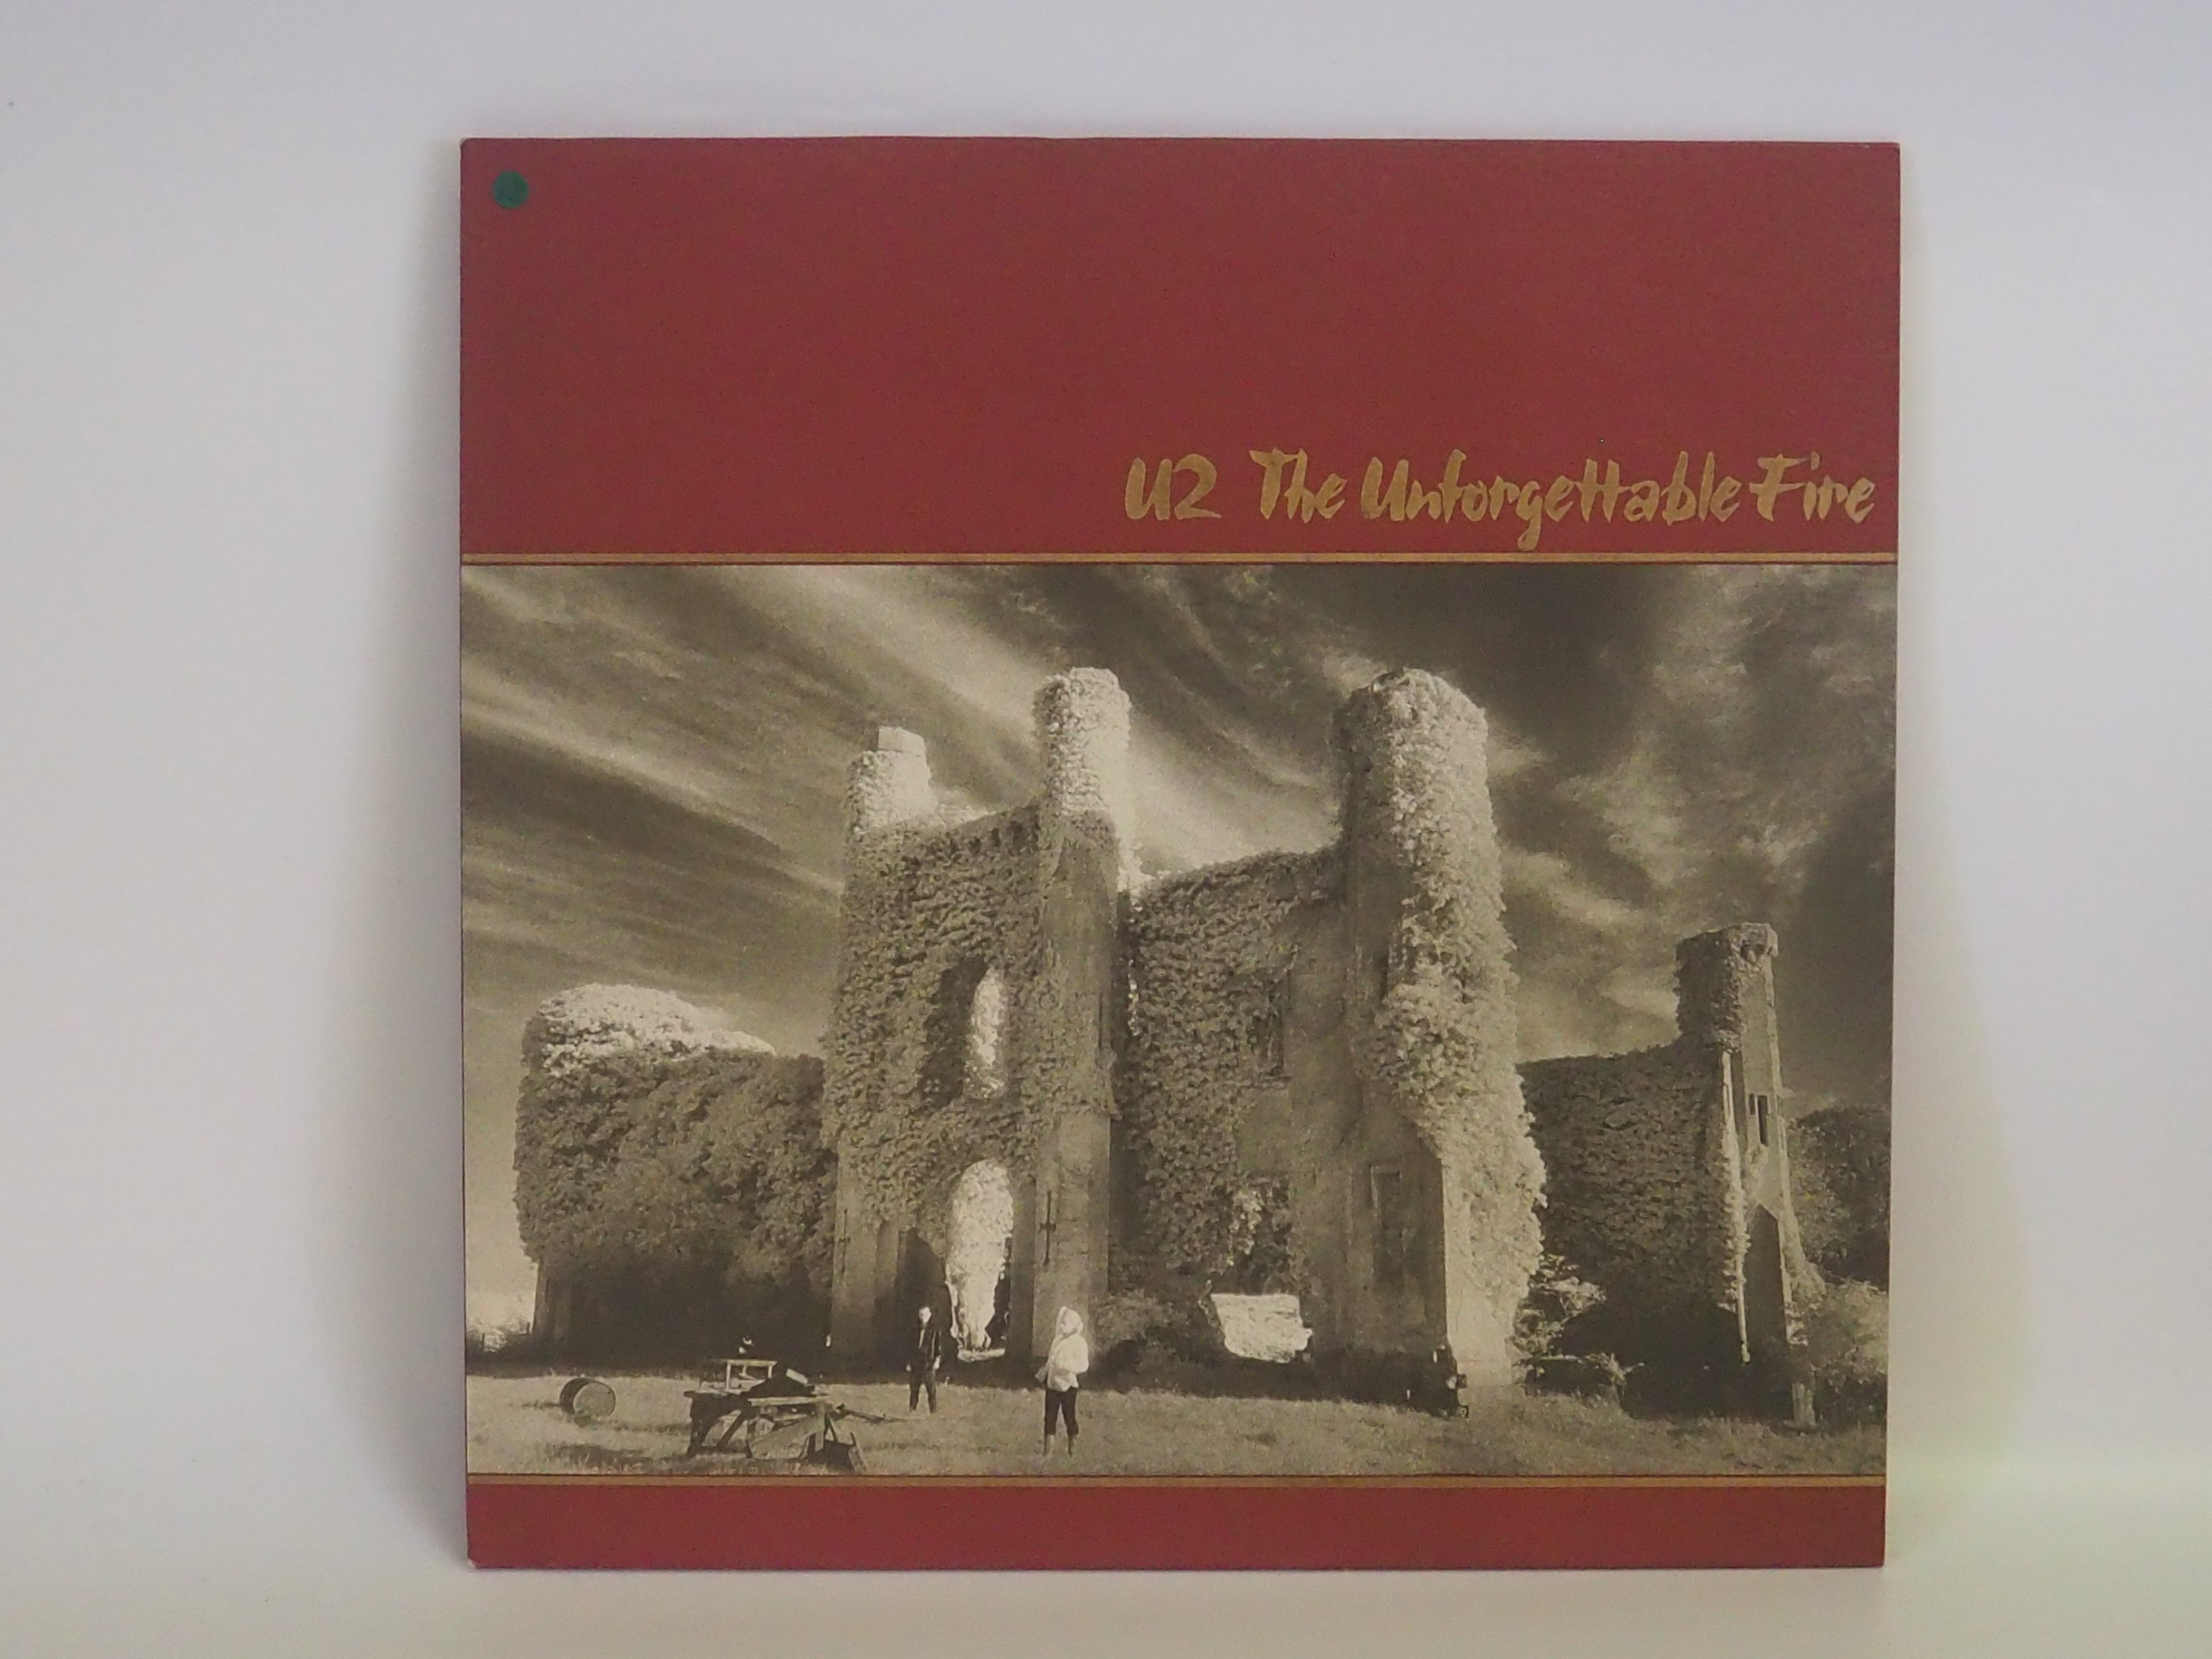 U2 - The unforgettable Fire - 12" Vinyl Album